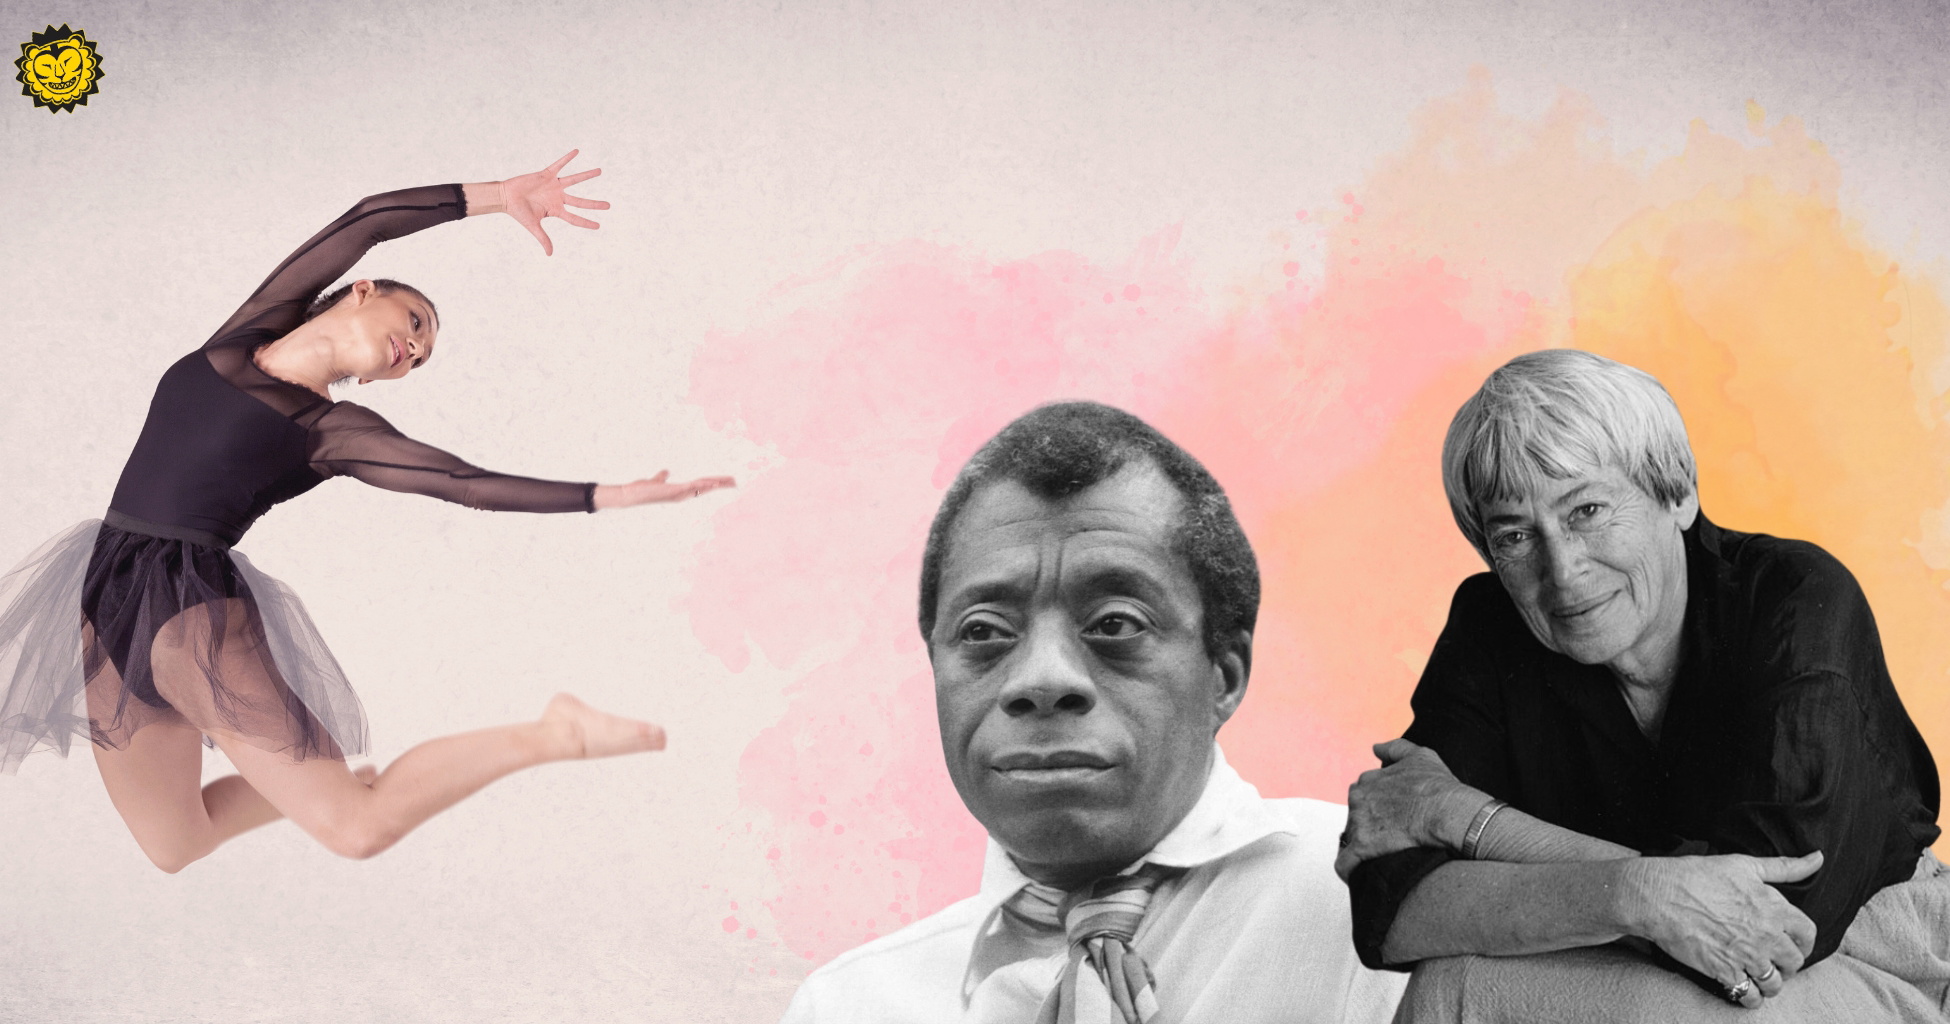 Balettdansös samt porträtt av James Baldwin och Ursula K. Le Guin.